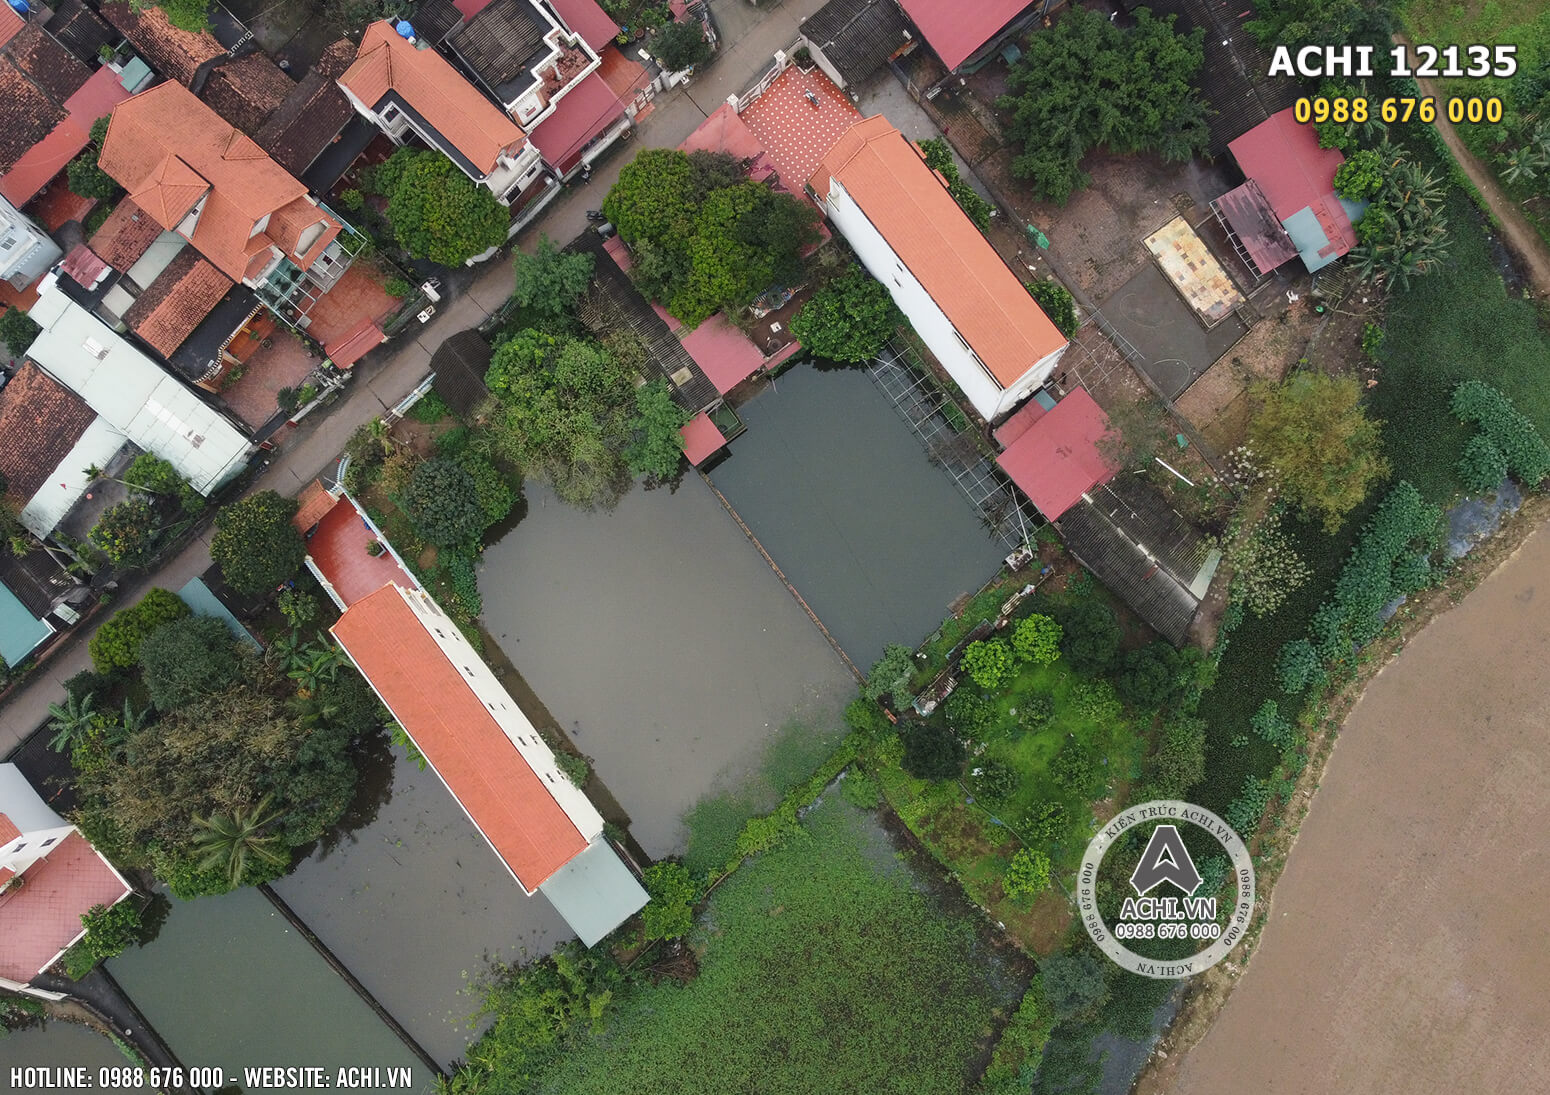 Khuôn đất thực tế nhà anh Bình tại Hưng Yên khi nhìn từ trên cao xuống